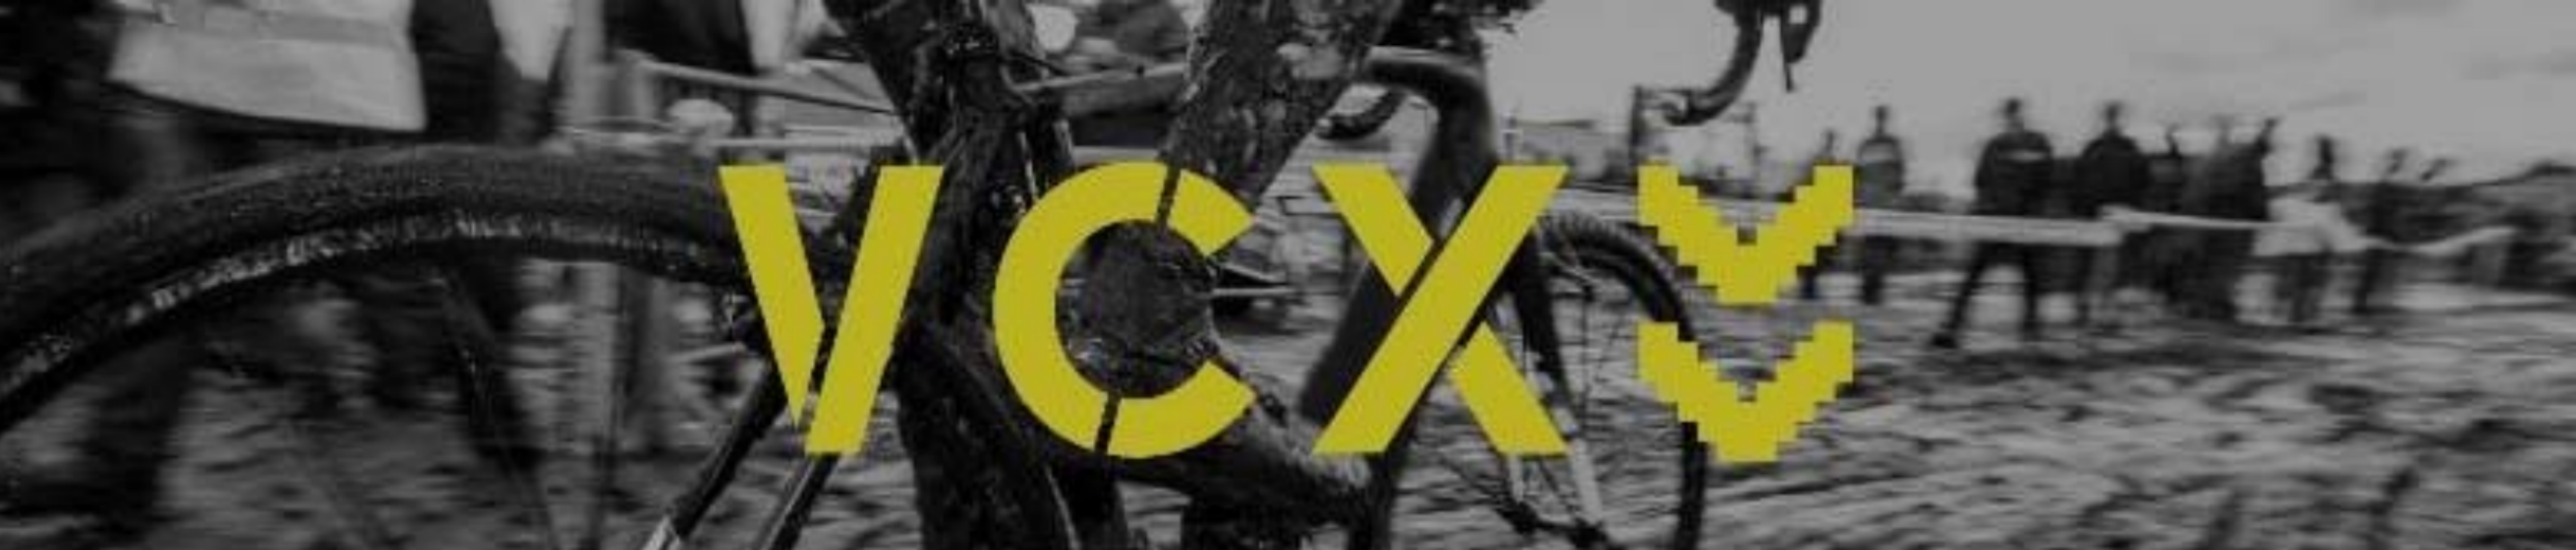 Varberg Cyclocross CX Pokalen 2021